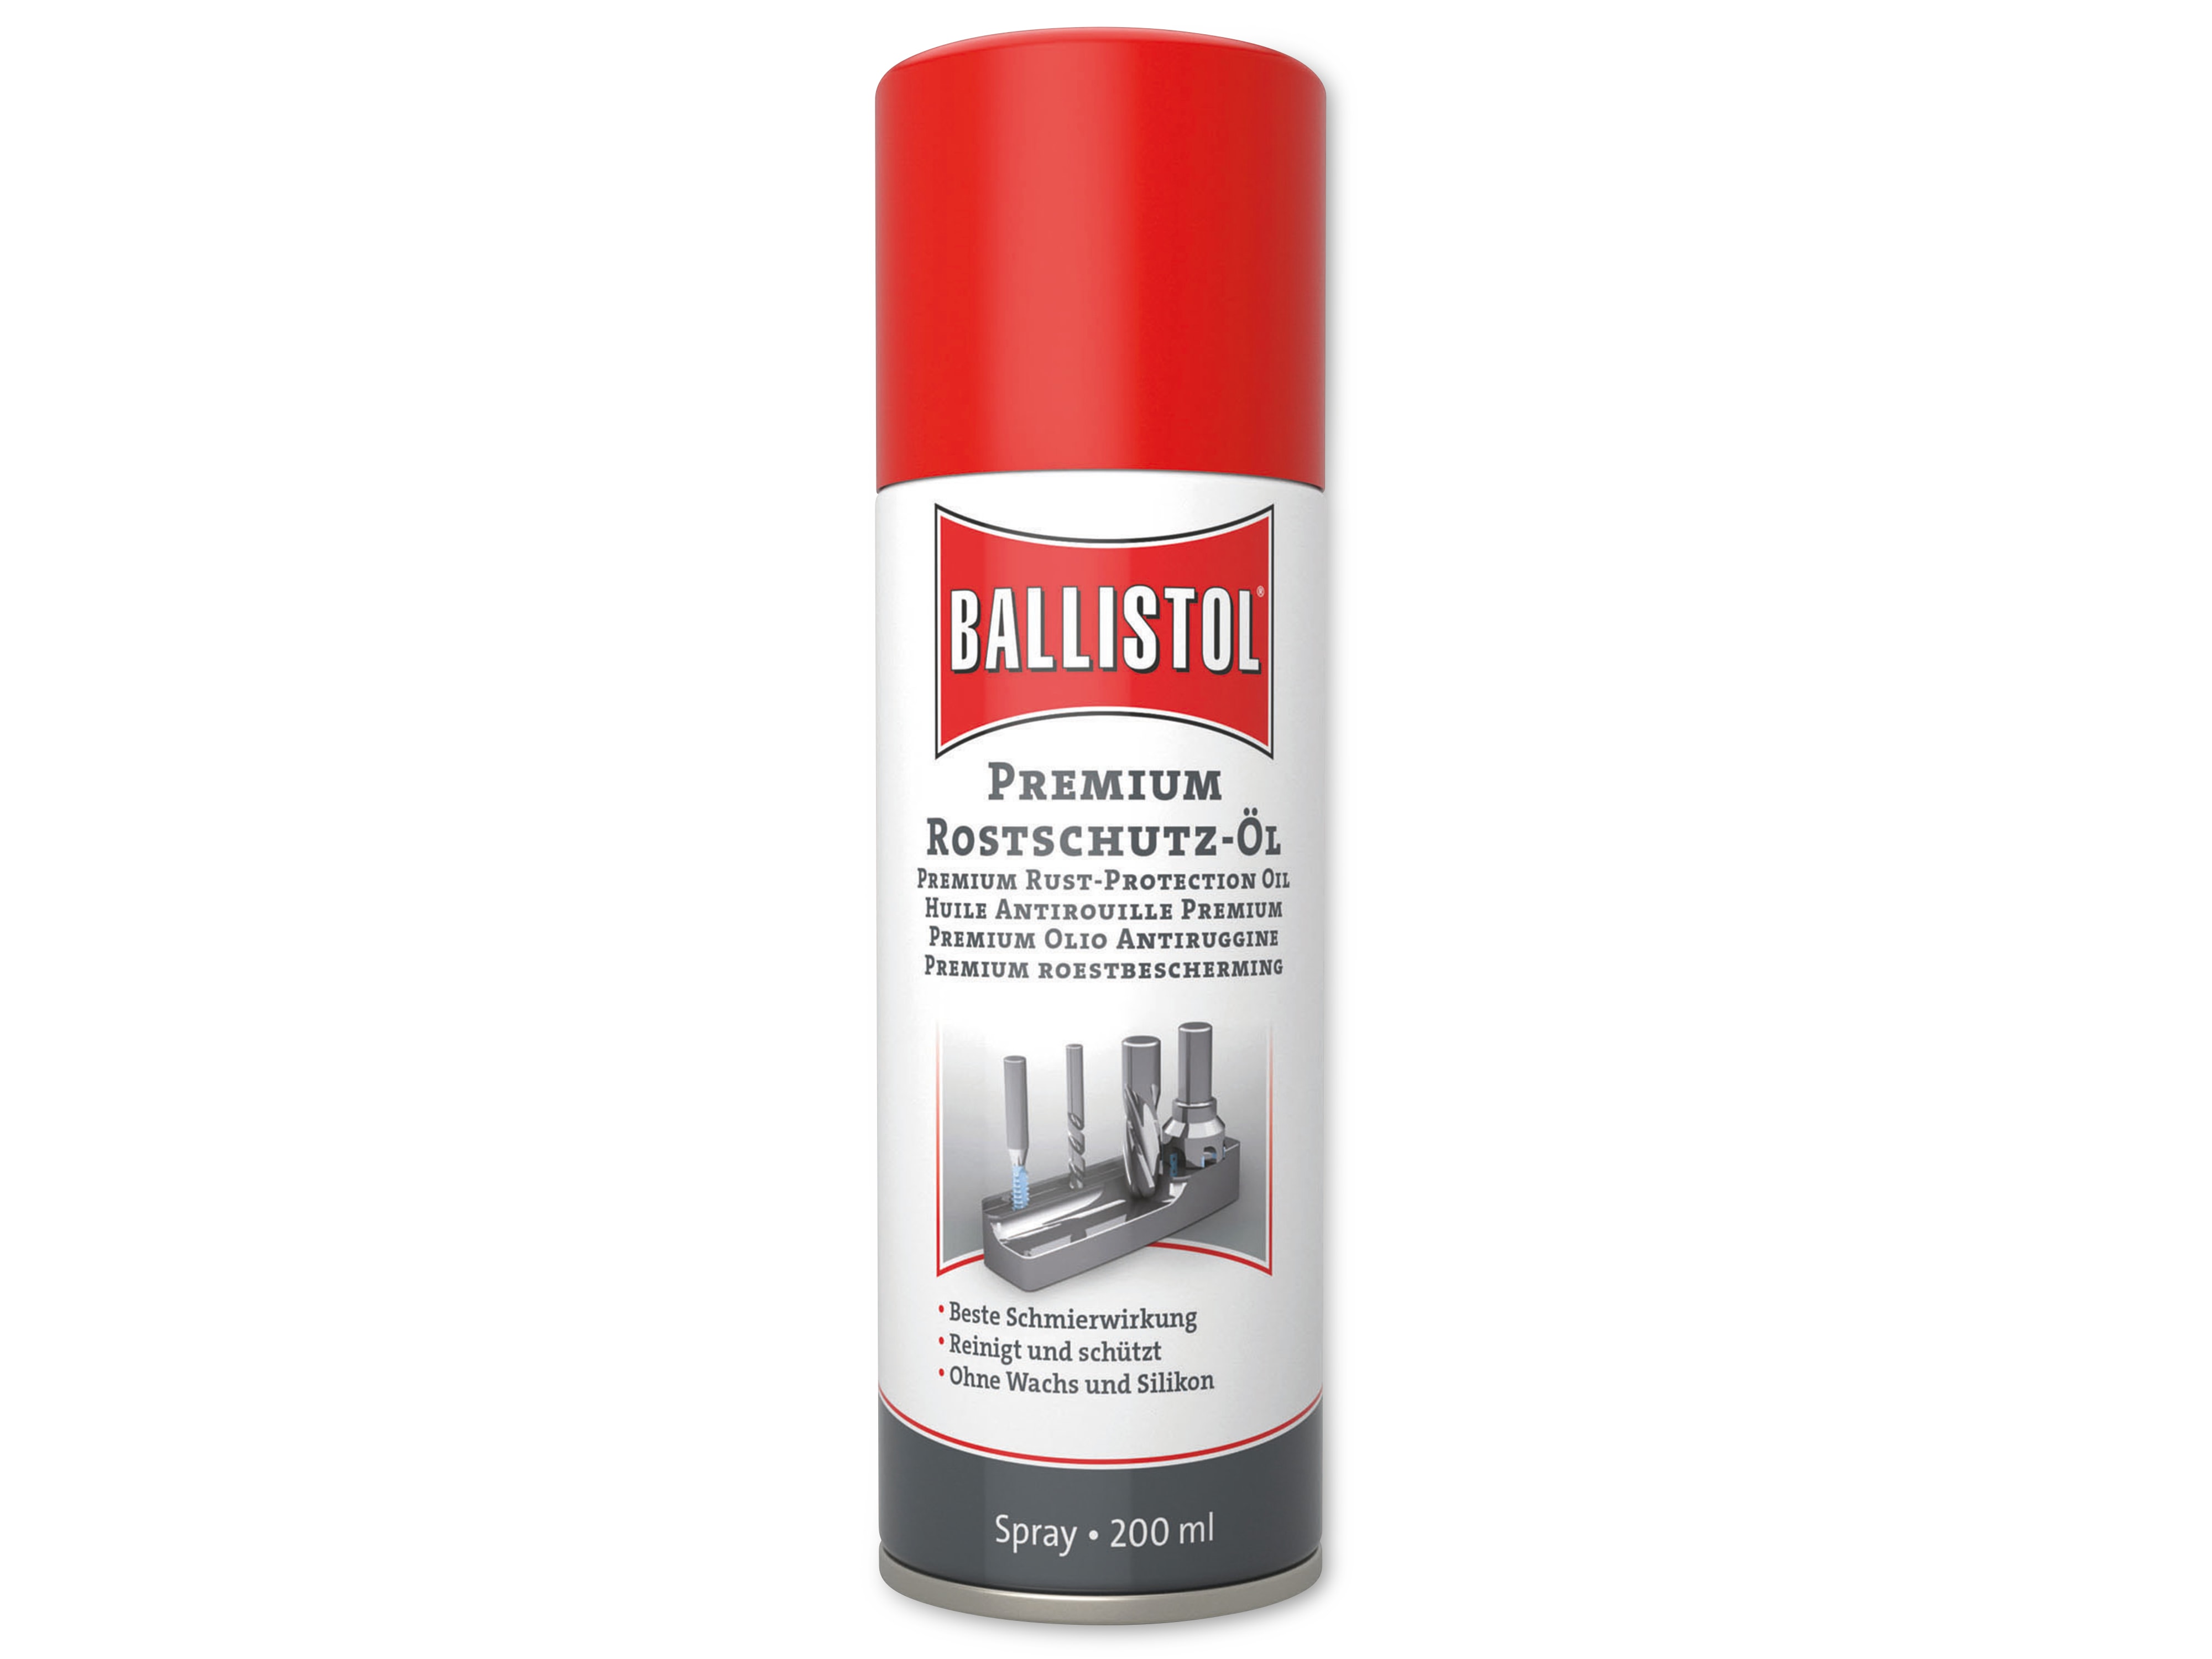 BALLISTOL Premium Rostschutz-Öl Spray, 200 ml